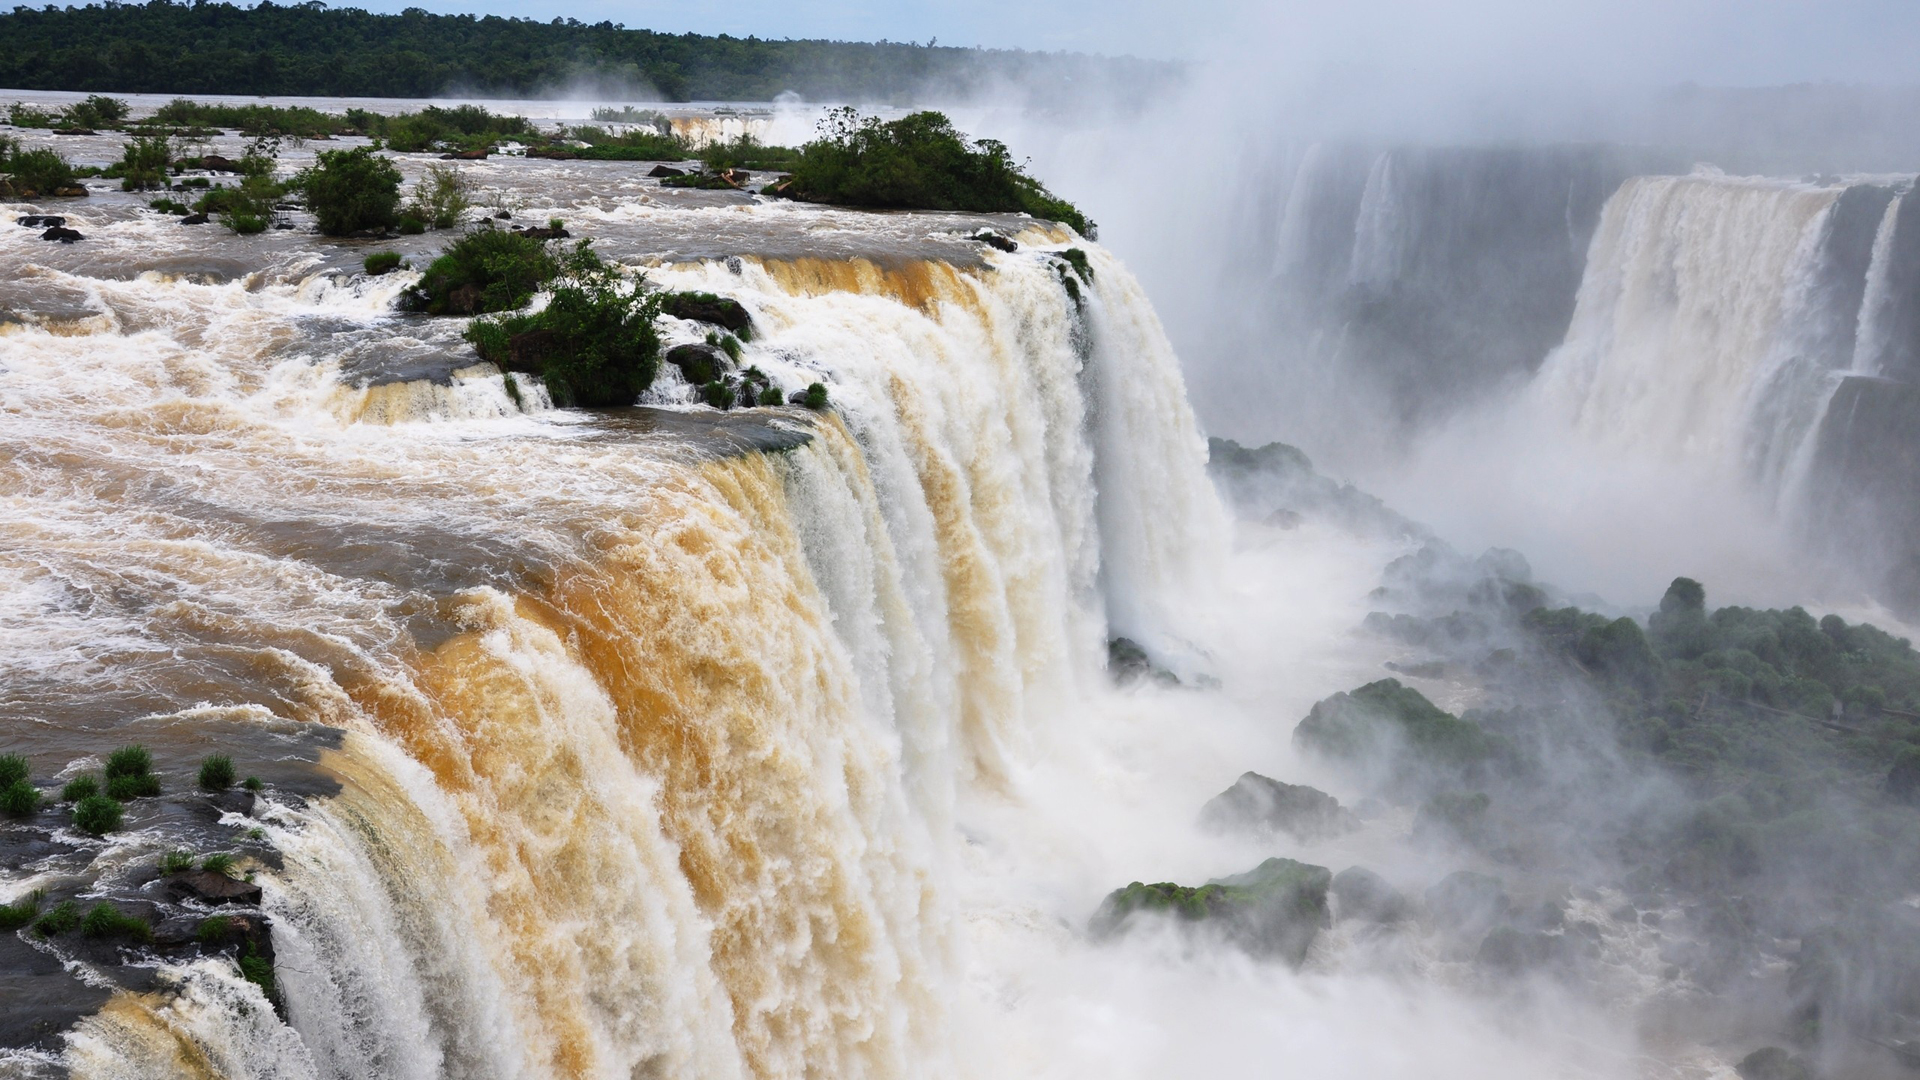 تصویر آبشار بزرگ و خروشان با کیفیت 4k مخصوص چاپ